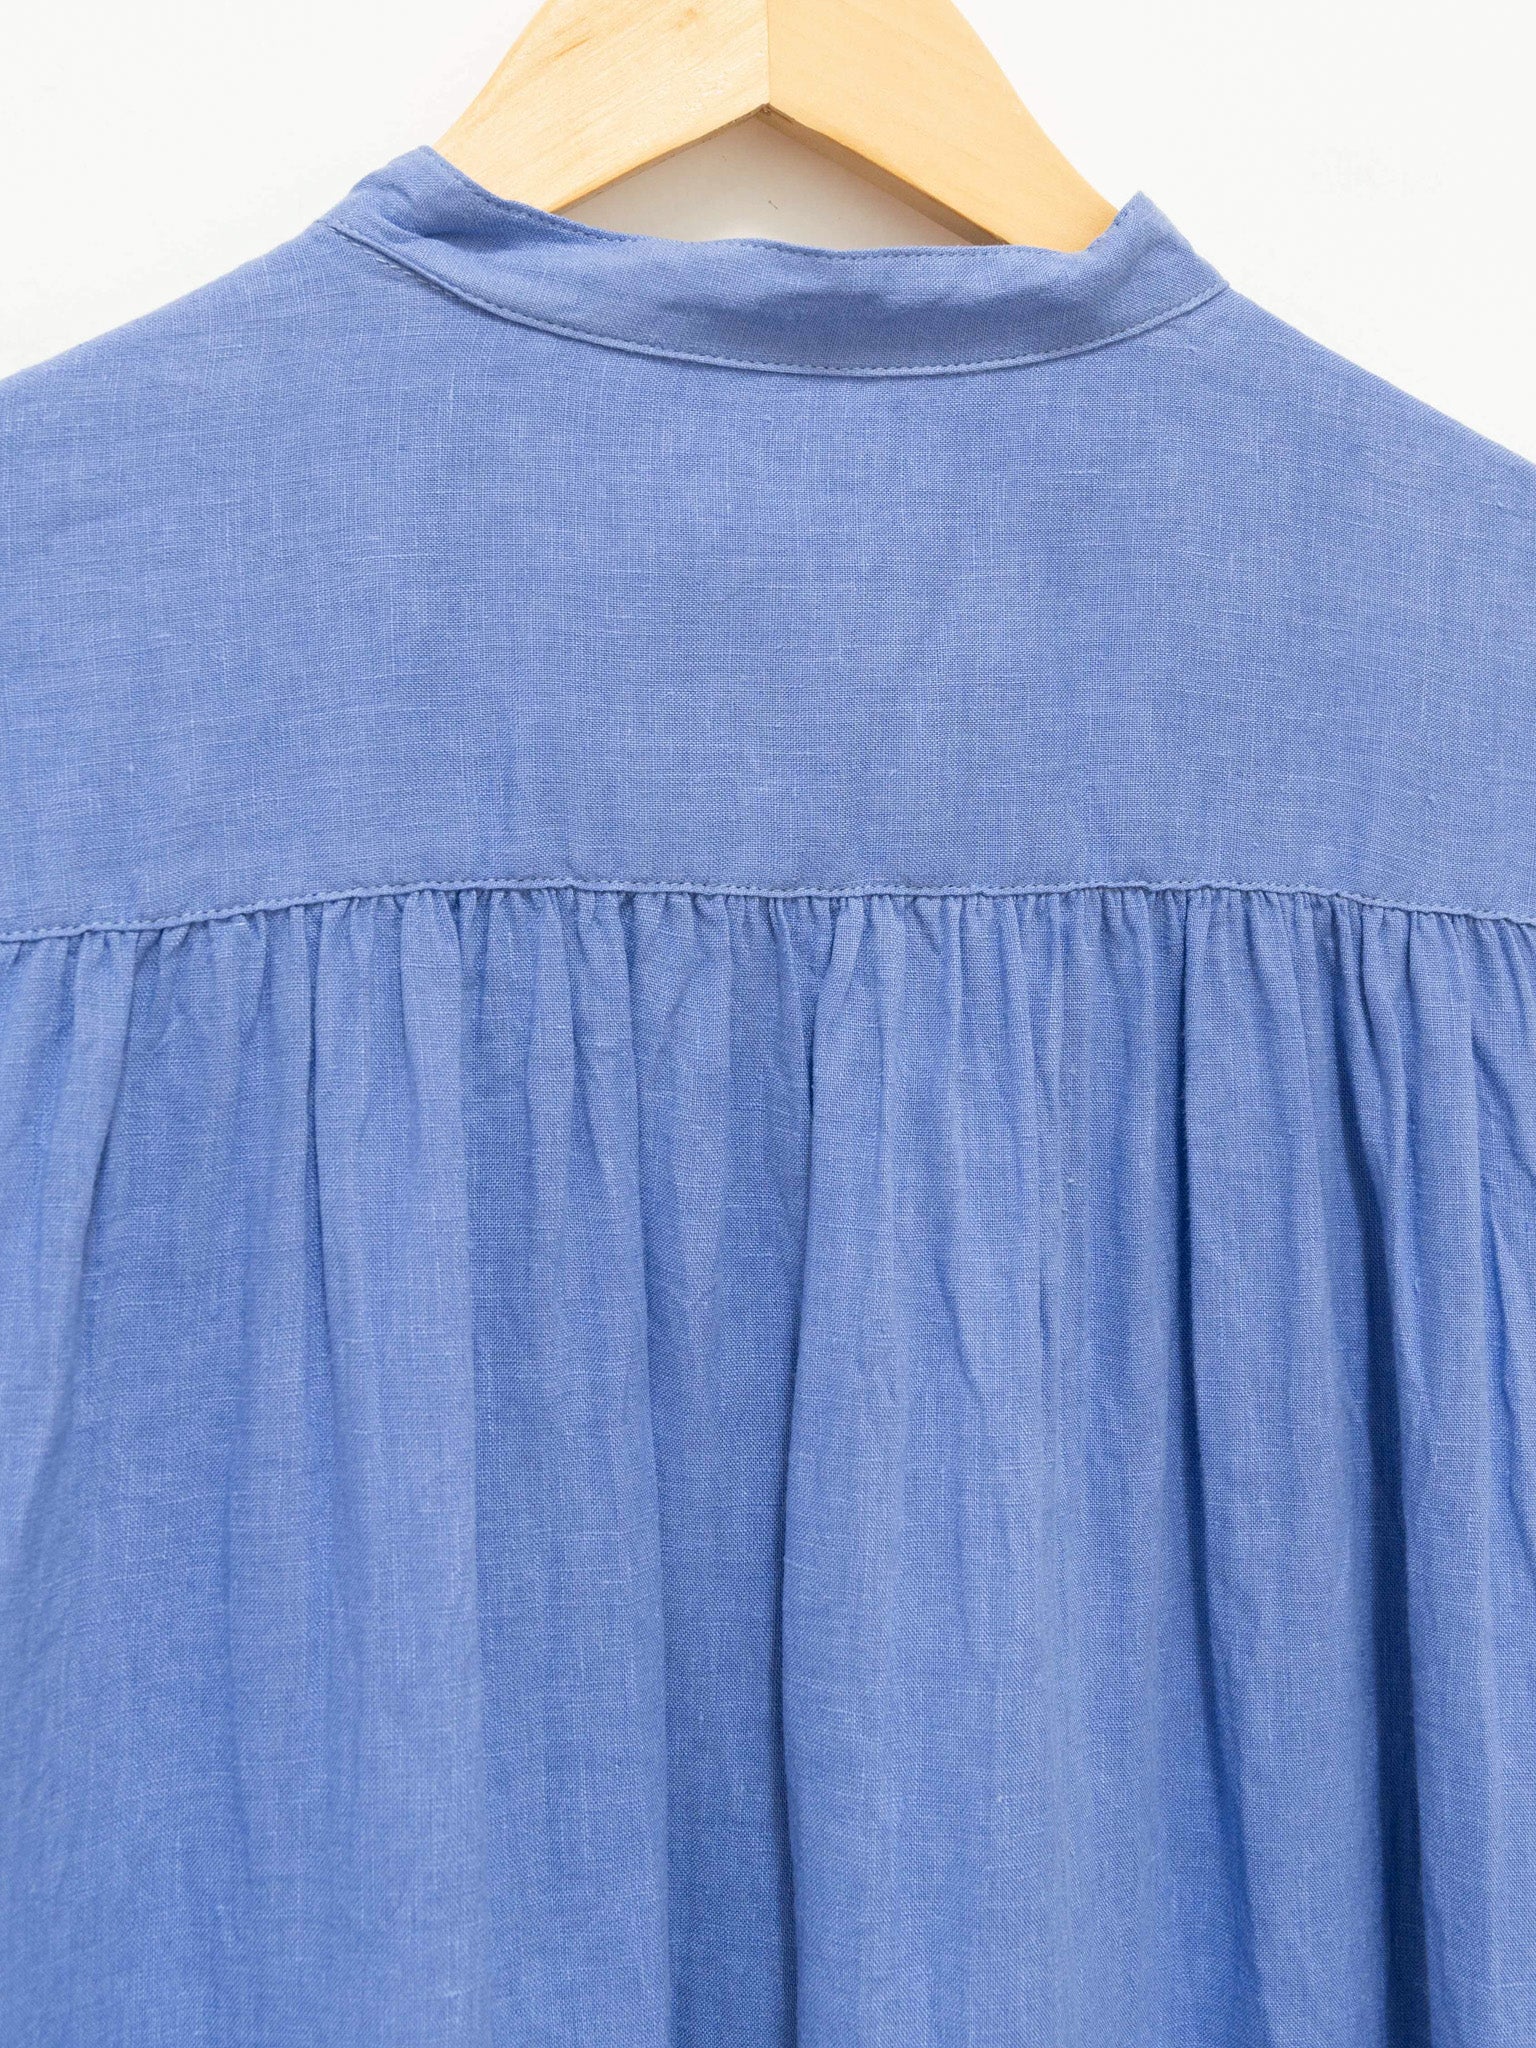 Namu Shop - ICHI Linen Canvas Sleeveless BD Dress - Blue